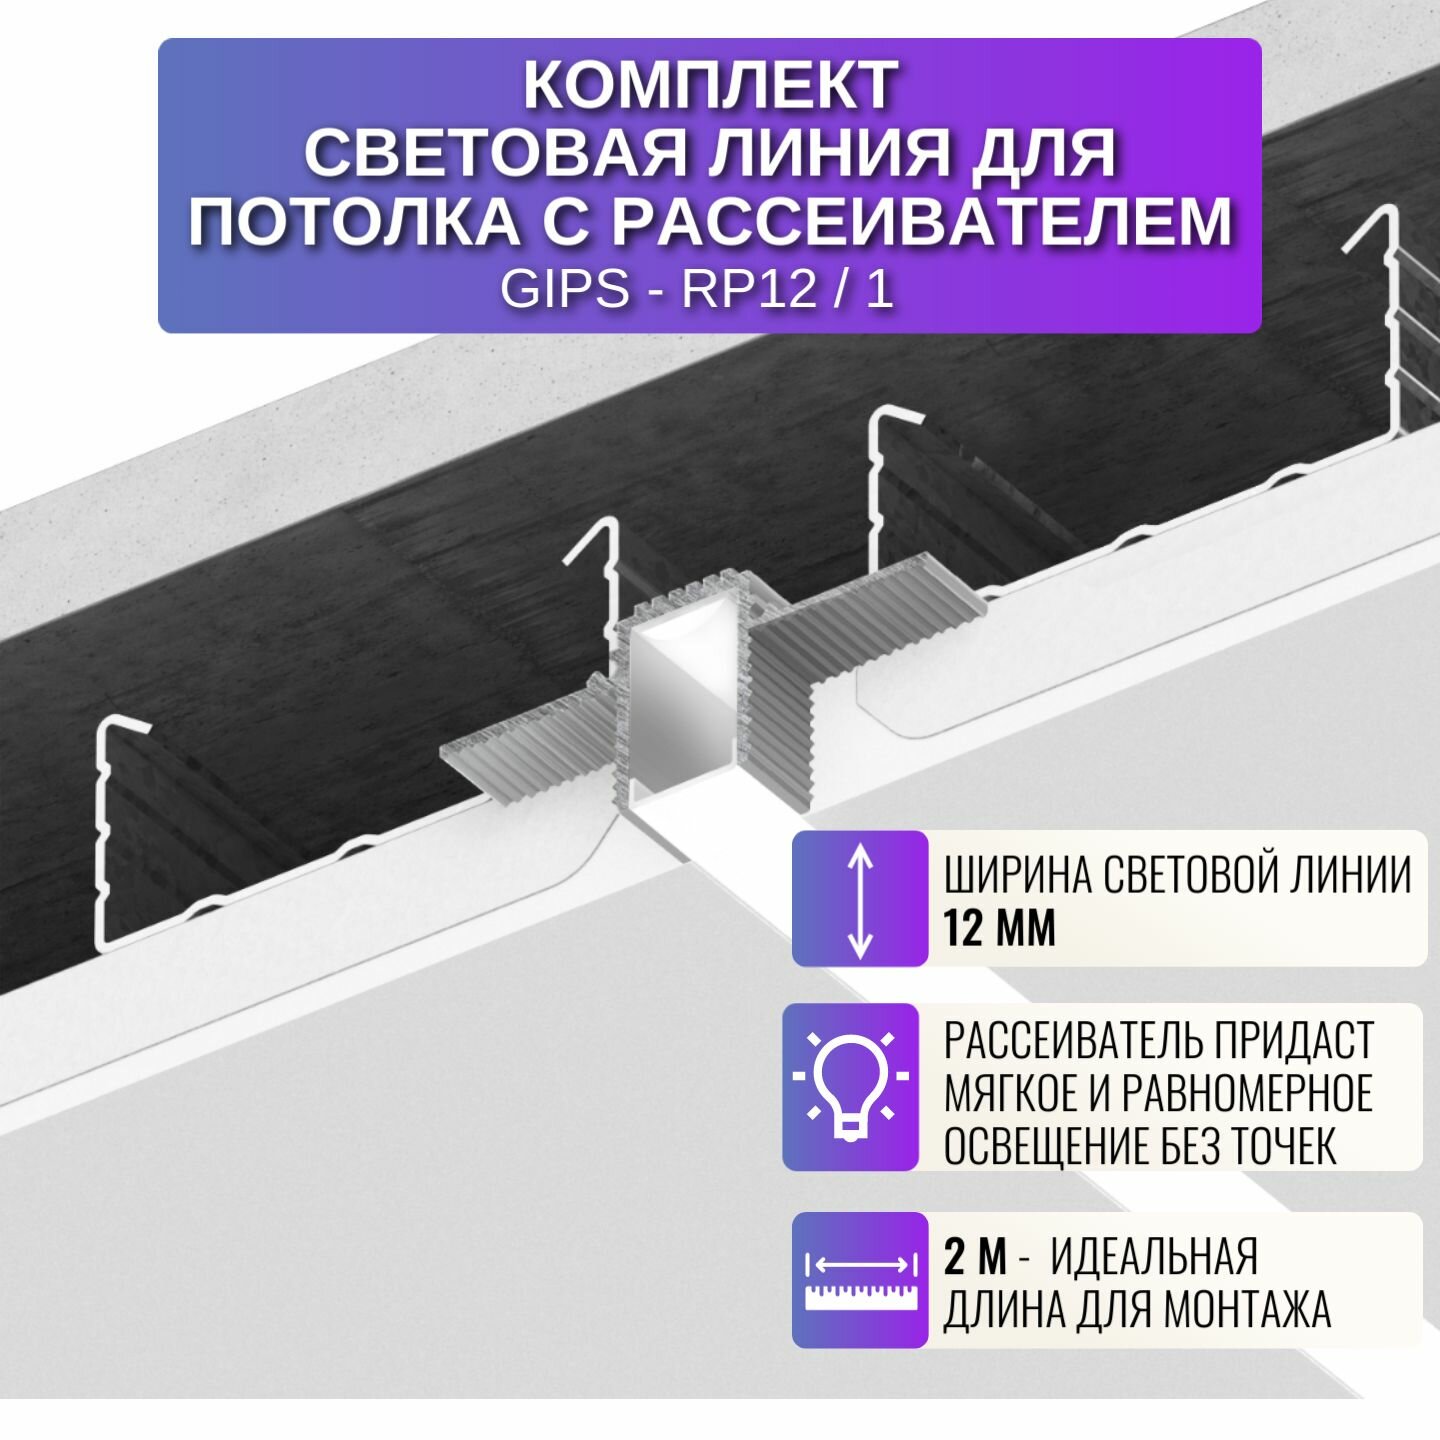 Комплект профиль световая линия и рассеиватель для потолка из ГКЛ 2 метра 1 шт